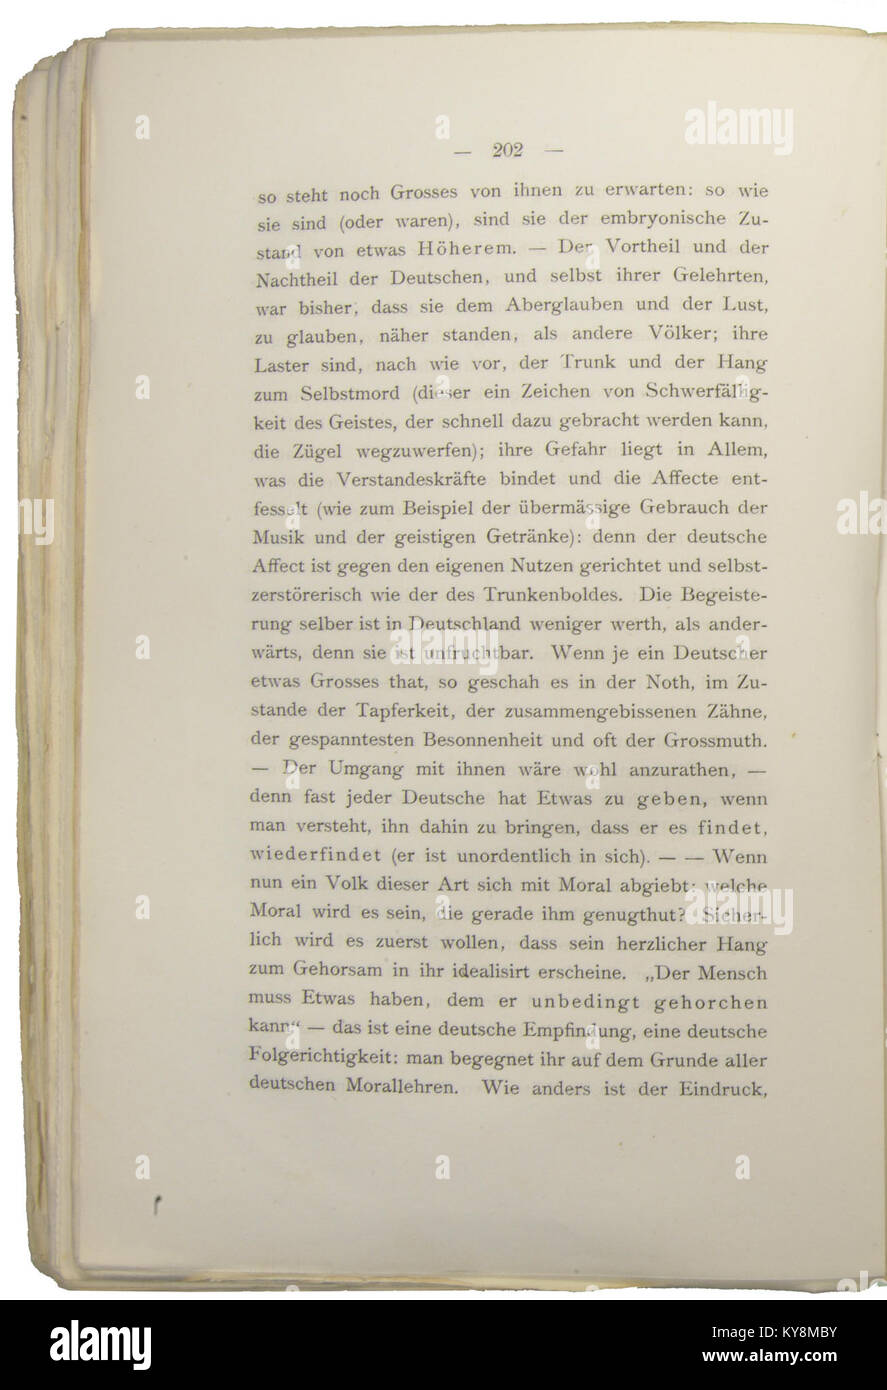 Nietzsche - Morgenröthe, 1881, p. 202 Stock Photo